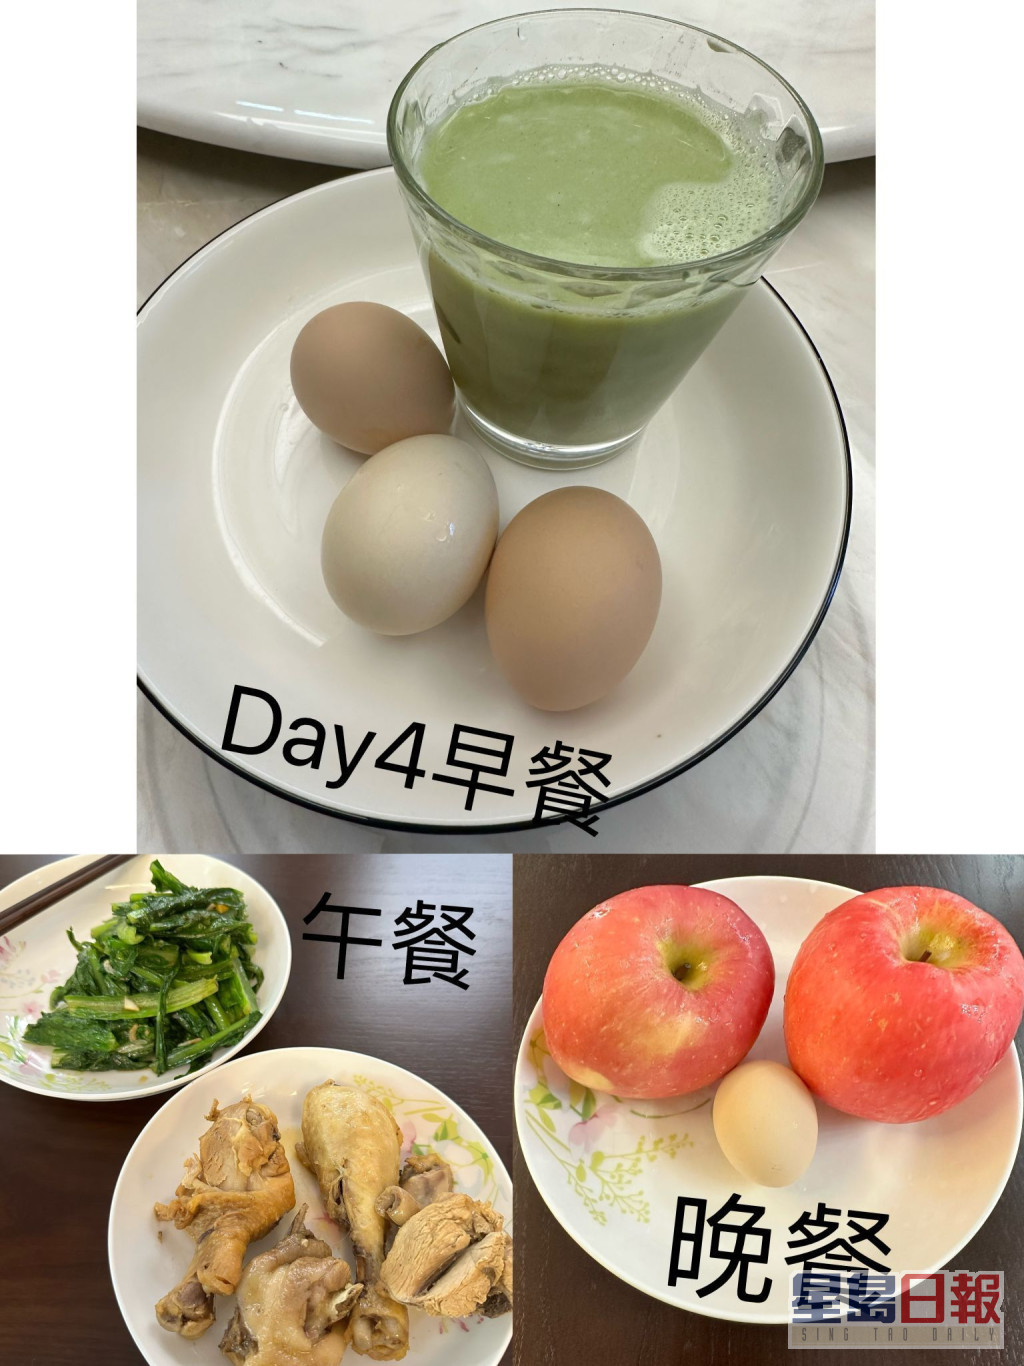 第四日早餐：加入菜汁無糖豆漿及3烚蛋；午餐：烚雞腿和炒油墨菜；晚餐2蘋果和1烚蛋。